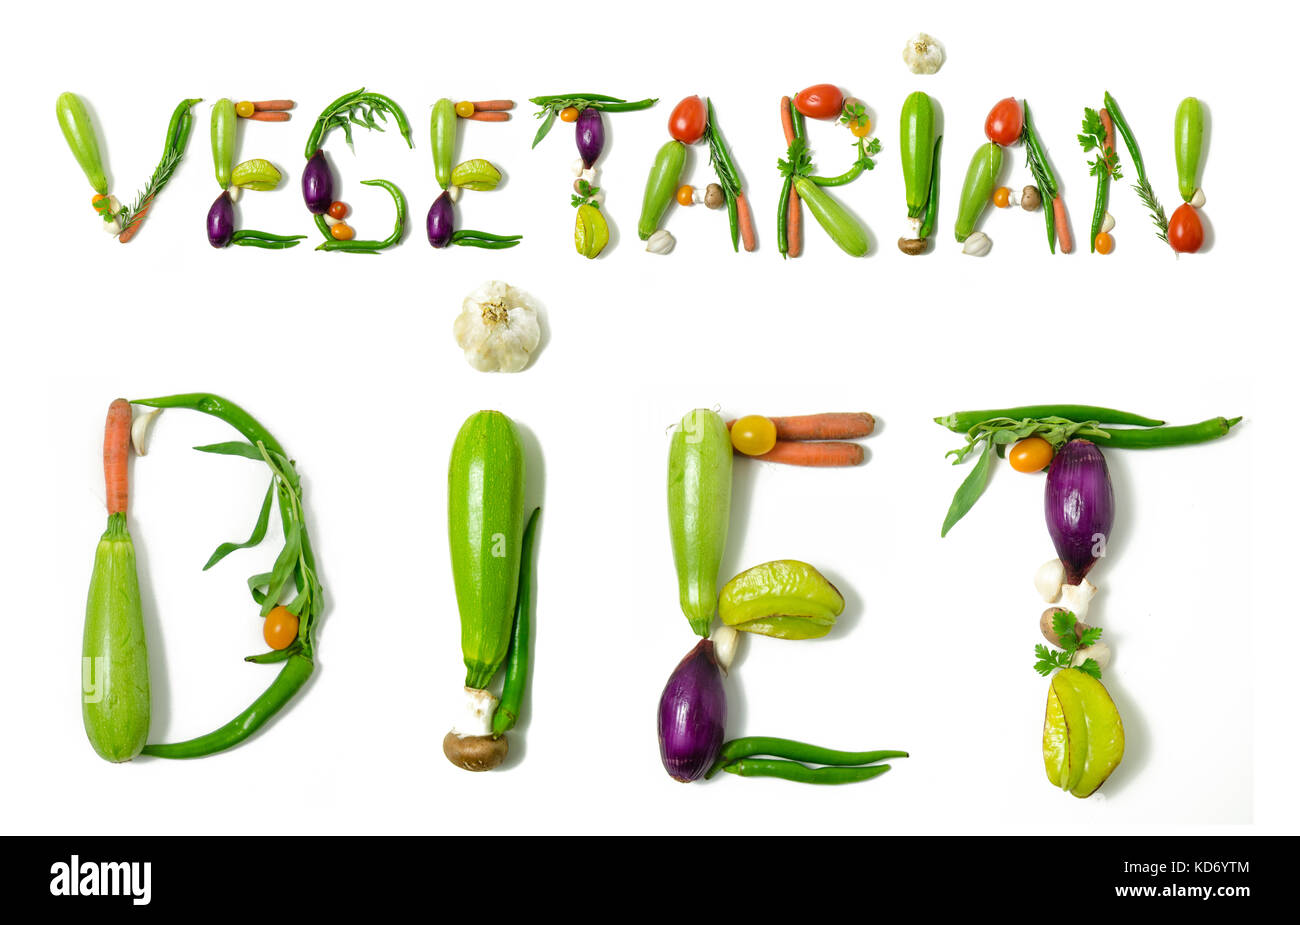 Régime alimentaire phrase 'végétarien' écrit avec des légumes comme un concept de style de vie sain, régime végétarien ou végétalien, la remise en forme ou la réduction de calories Banque D'Images